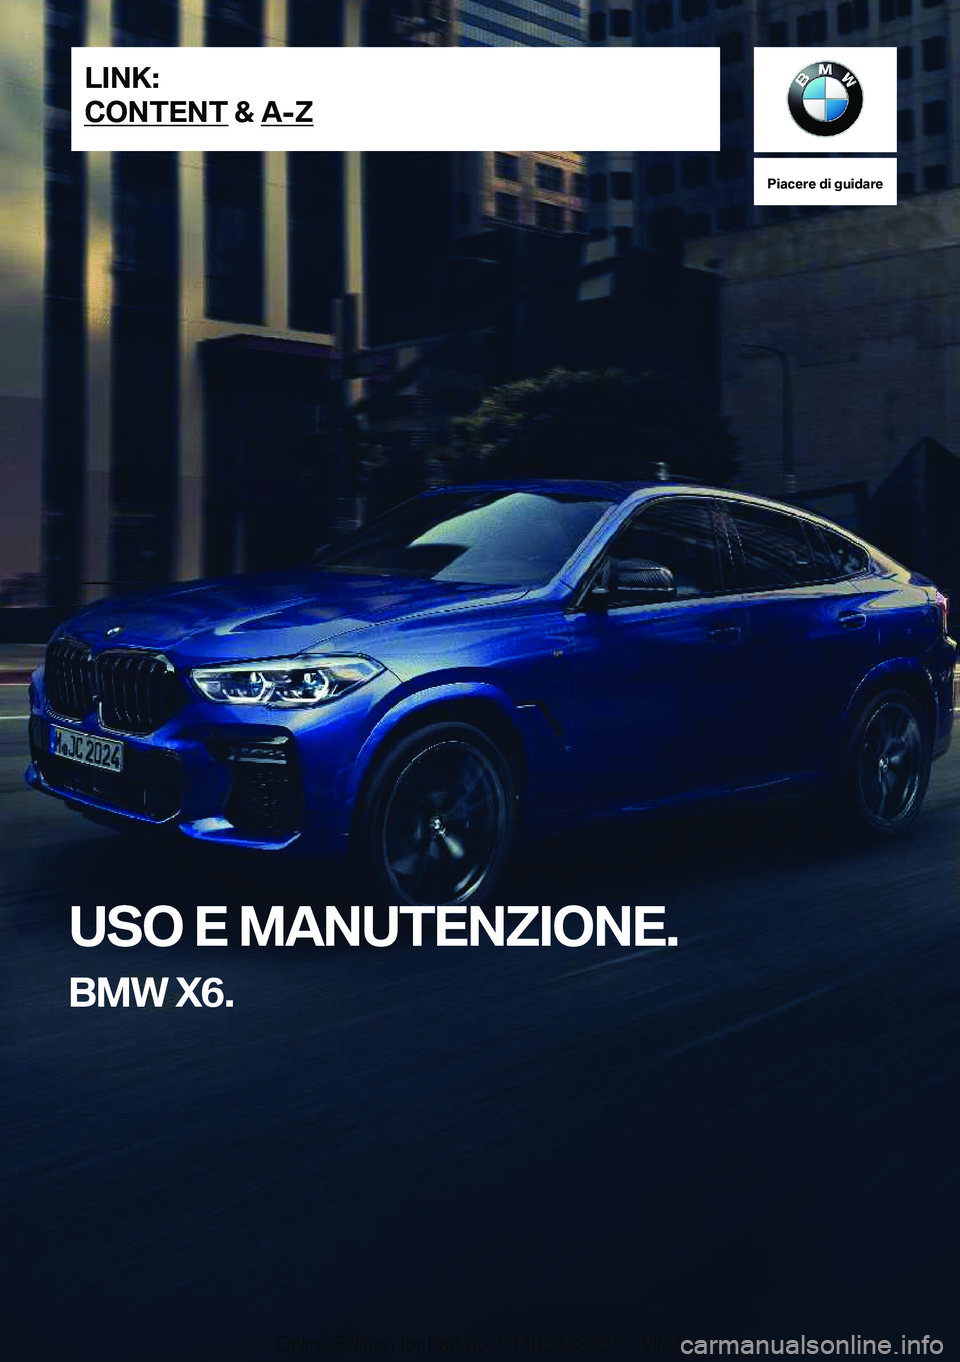 BMW X6 2022  Libretti Di Uso E manutenzione (in Italian) �P�i�a�c�e�r�e��d�i��g�u�i�d�a�r�e
�U�S�O��E��M�A�N�U�T�E�N�Z�I�O�N�E�.
�B�M�W��X�6�.�L�I�N�K�:
�C�O�N�T�E�N�T��&��A�-�Z�O�n�l�i�n�e��E�d�i�t�i�o�n��f�o�r��P�a�r�t��n�o�.��0�1�4�0�5�A�3�8�